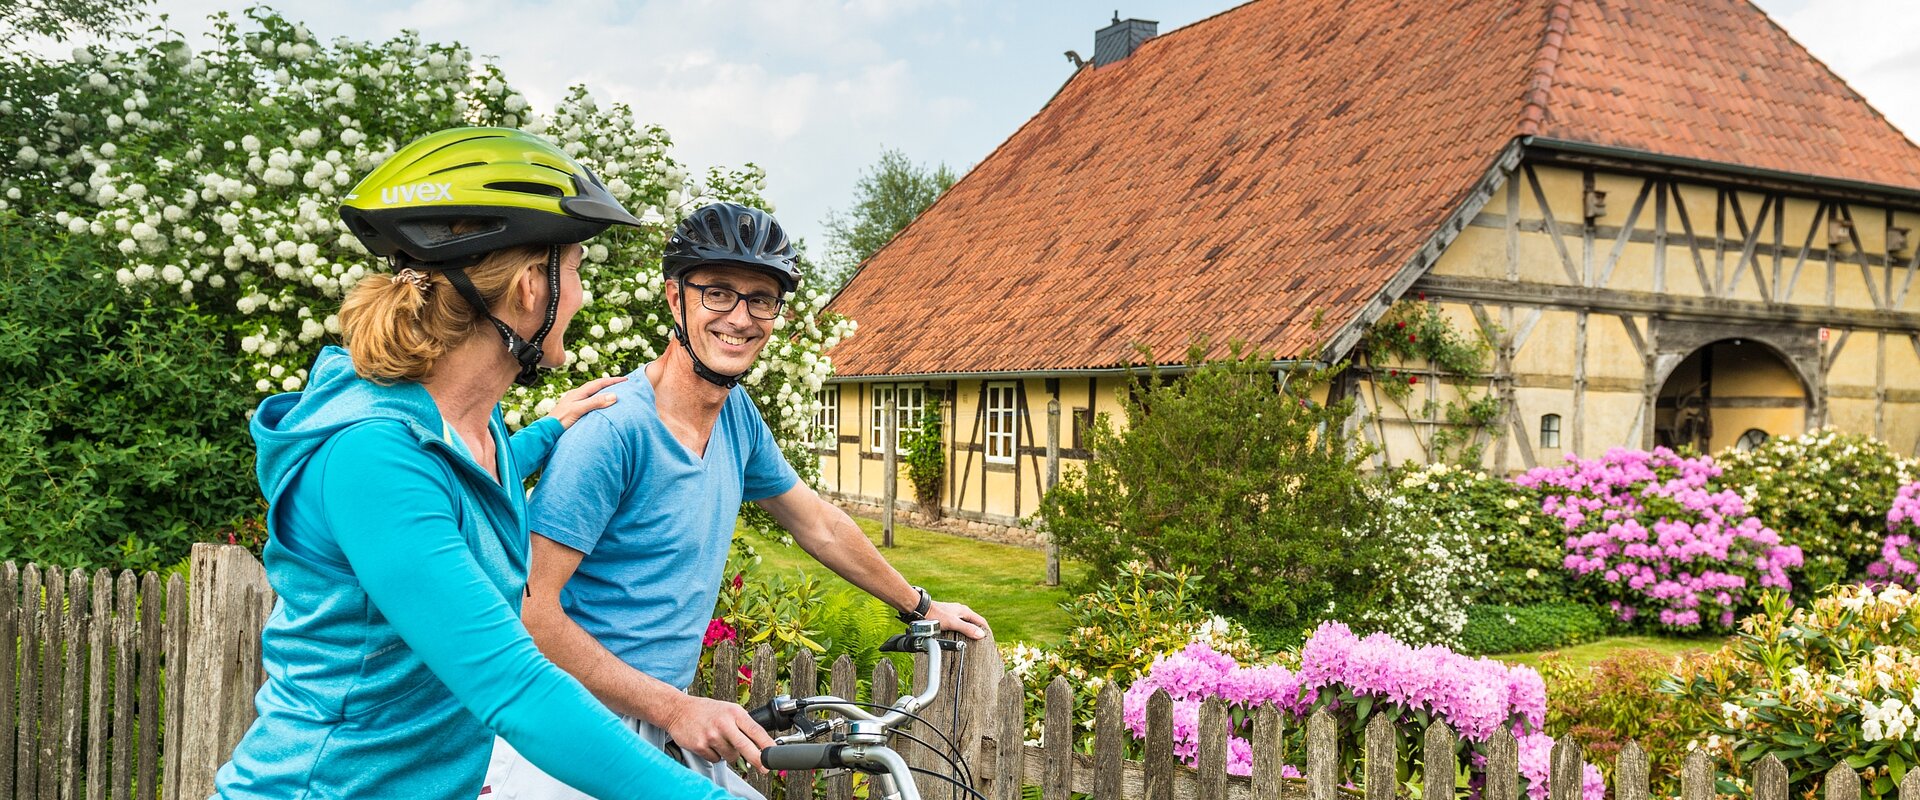 Ein Paar steht mit seinen Fahrrädern vor dem blühenden Vorgarten eines in Fachwerk gebauten Niedersachsenhauses.